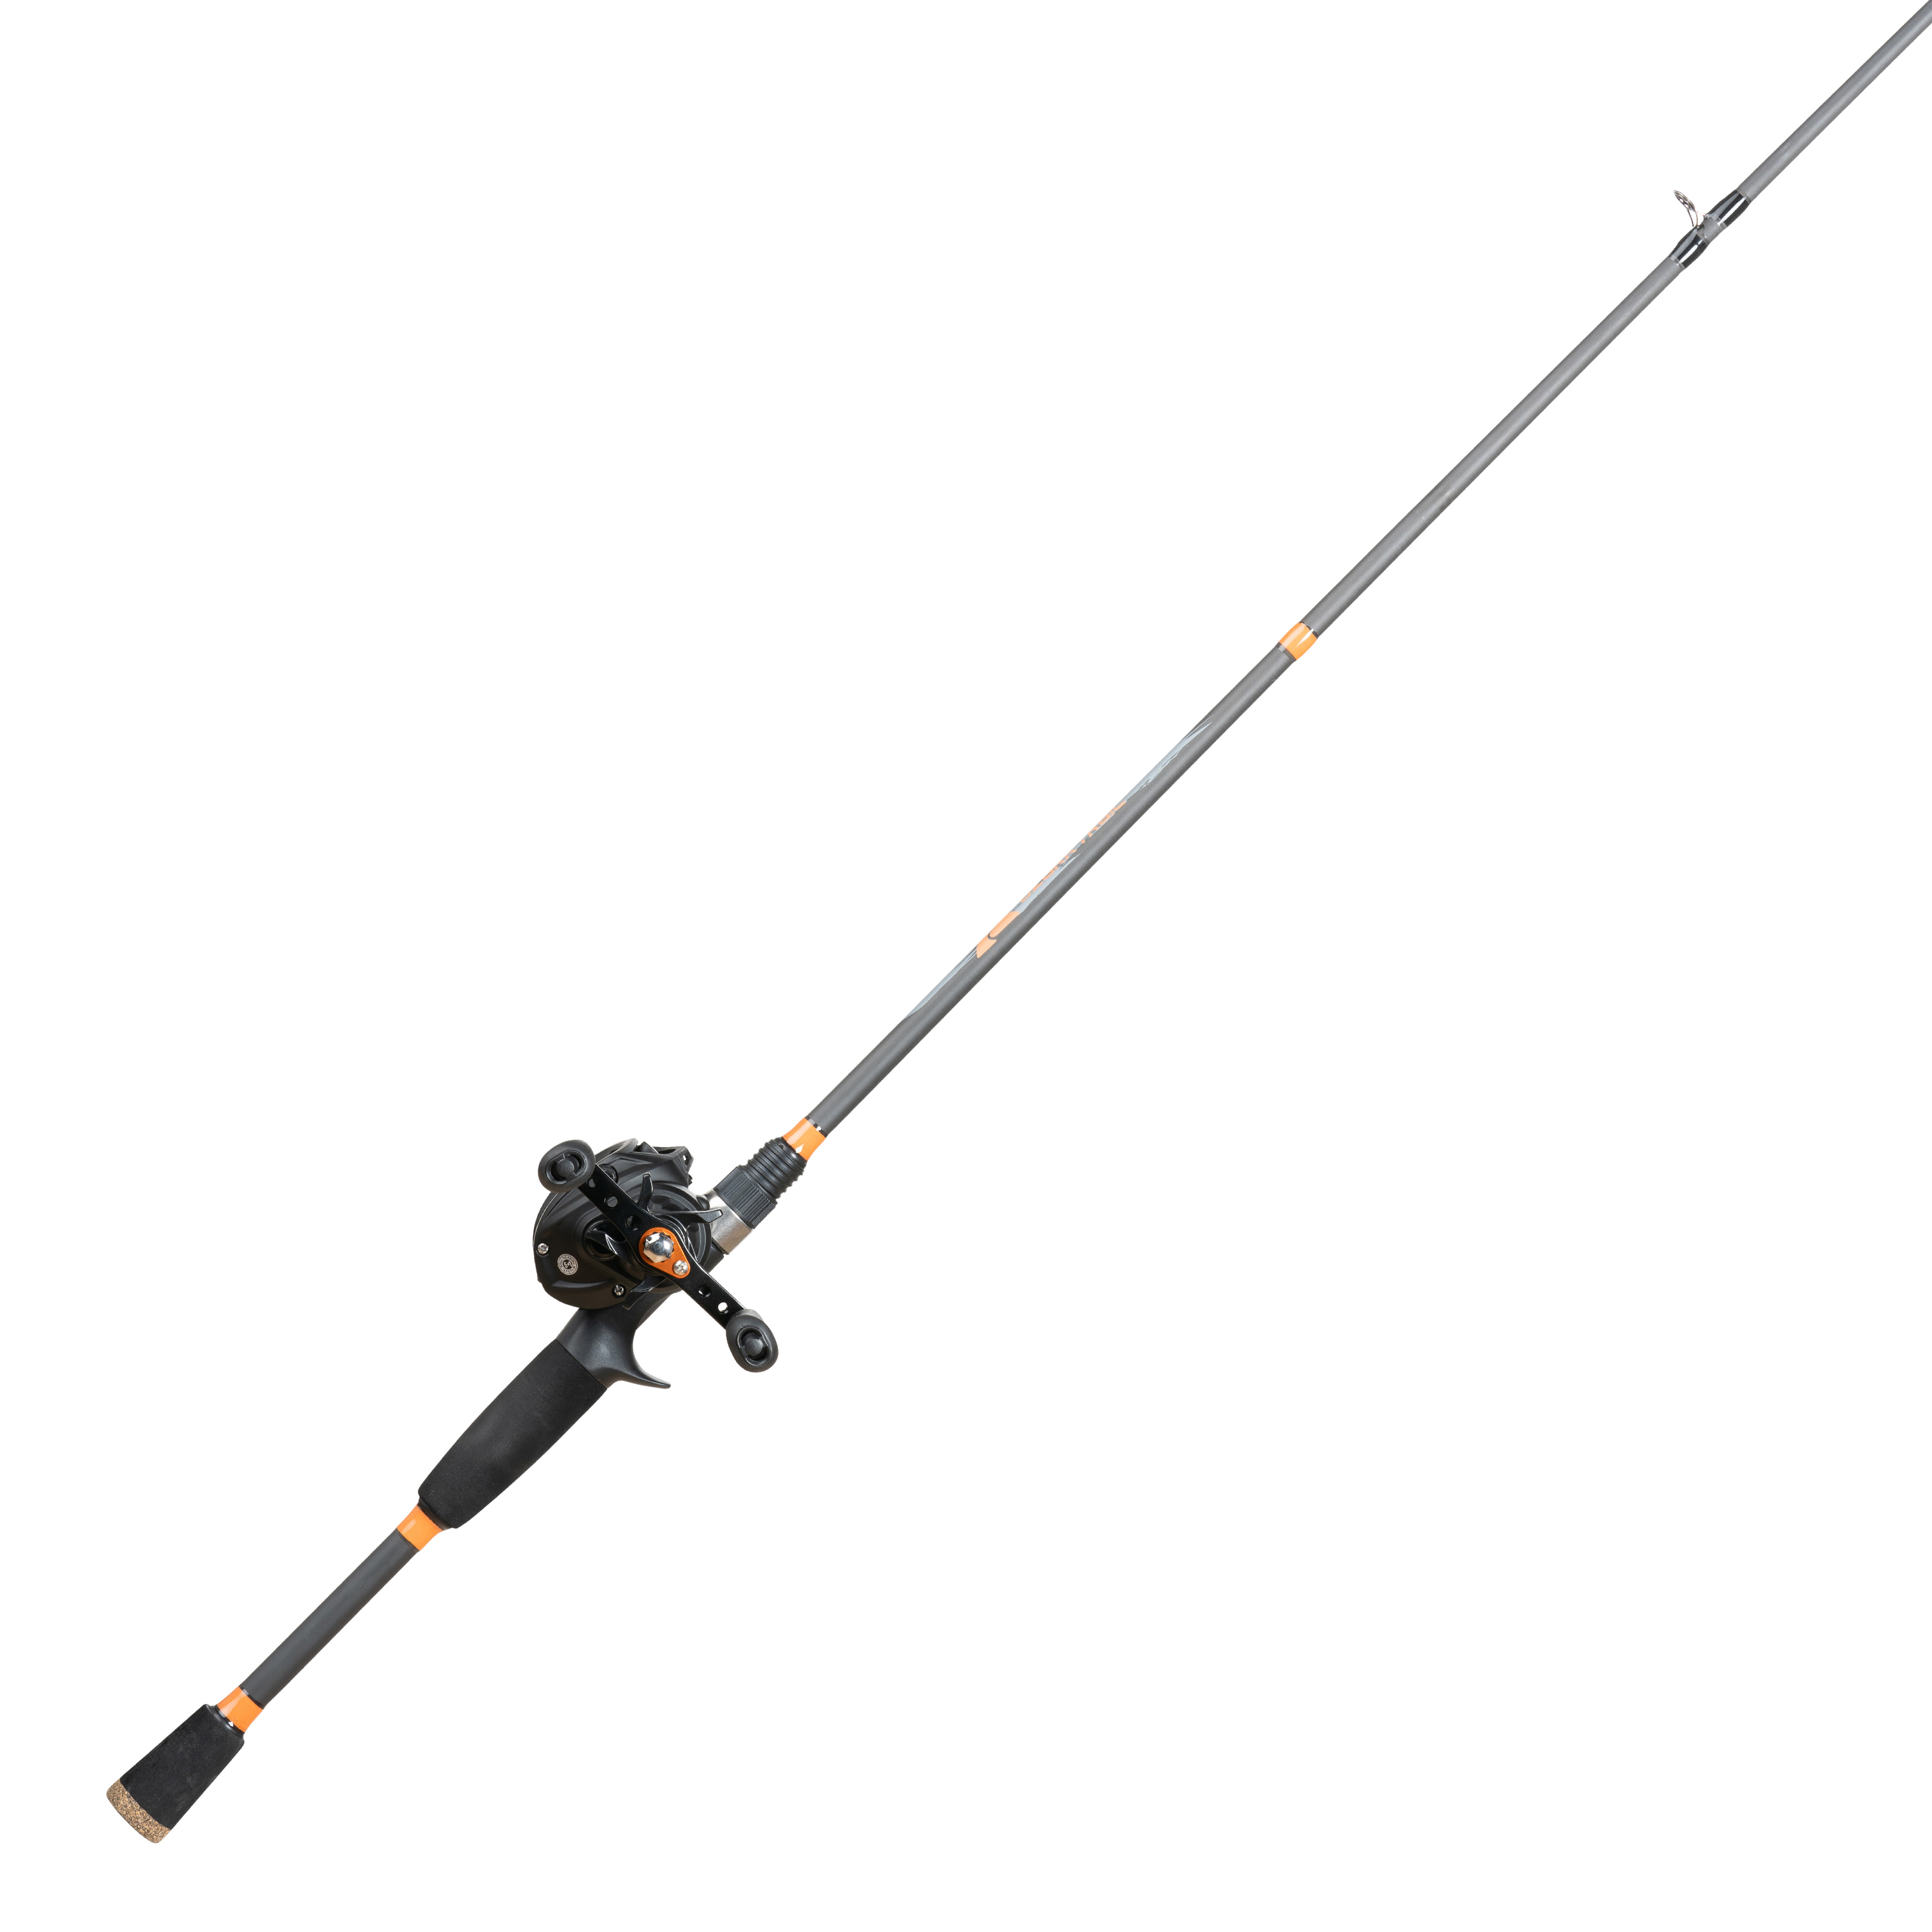 Ozark Trail Baitcast Rod & Reel Fishing Combo, Medium Action, 6.5ft - Black and Orange - image 2 of 7